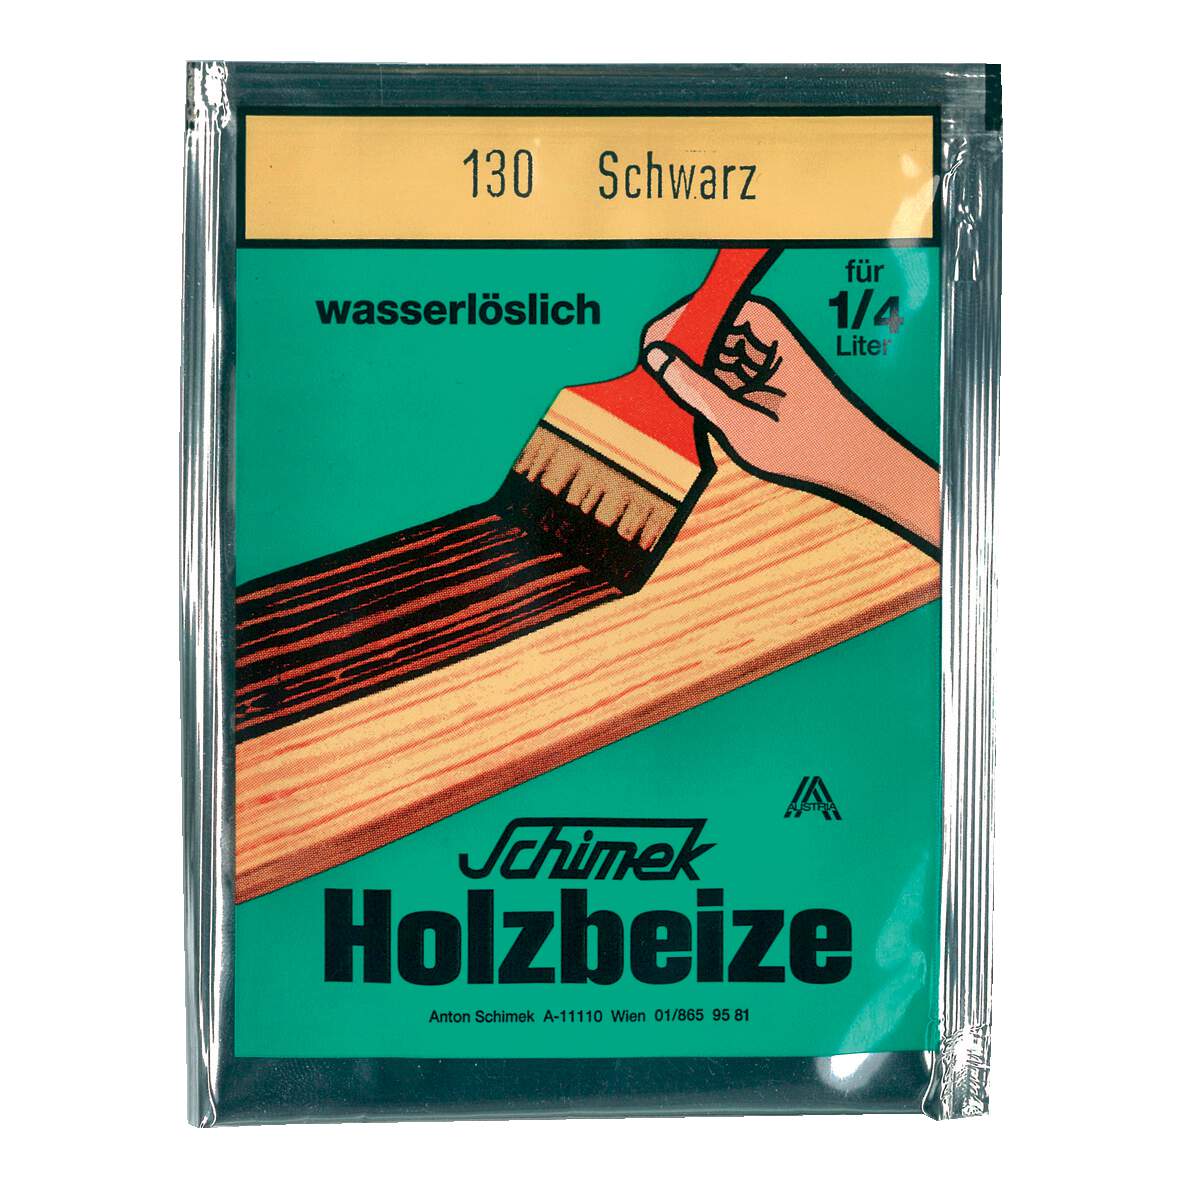 1216624 - Holzbeize wasserlöslich